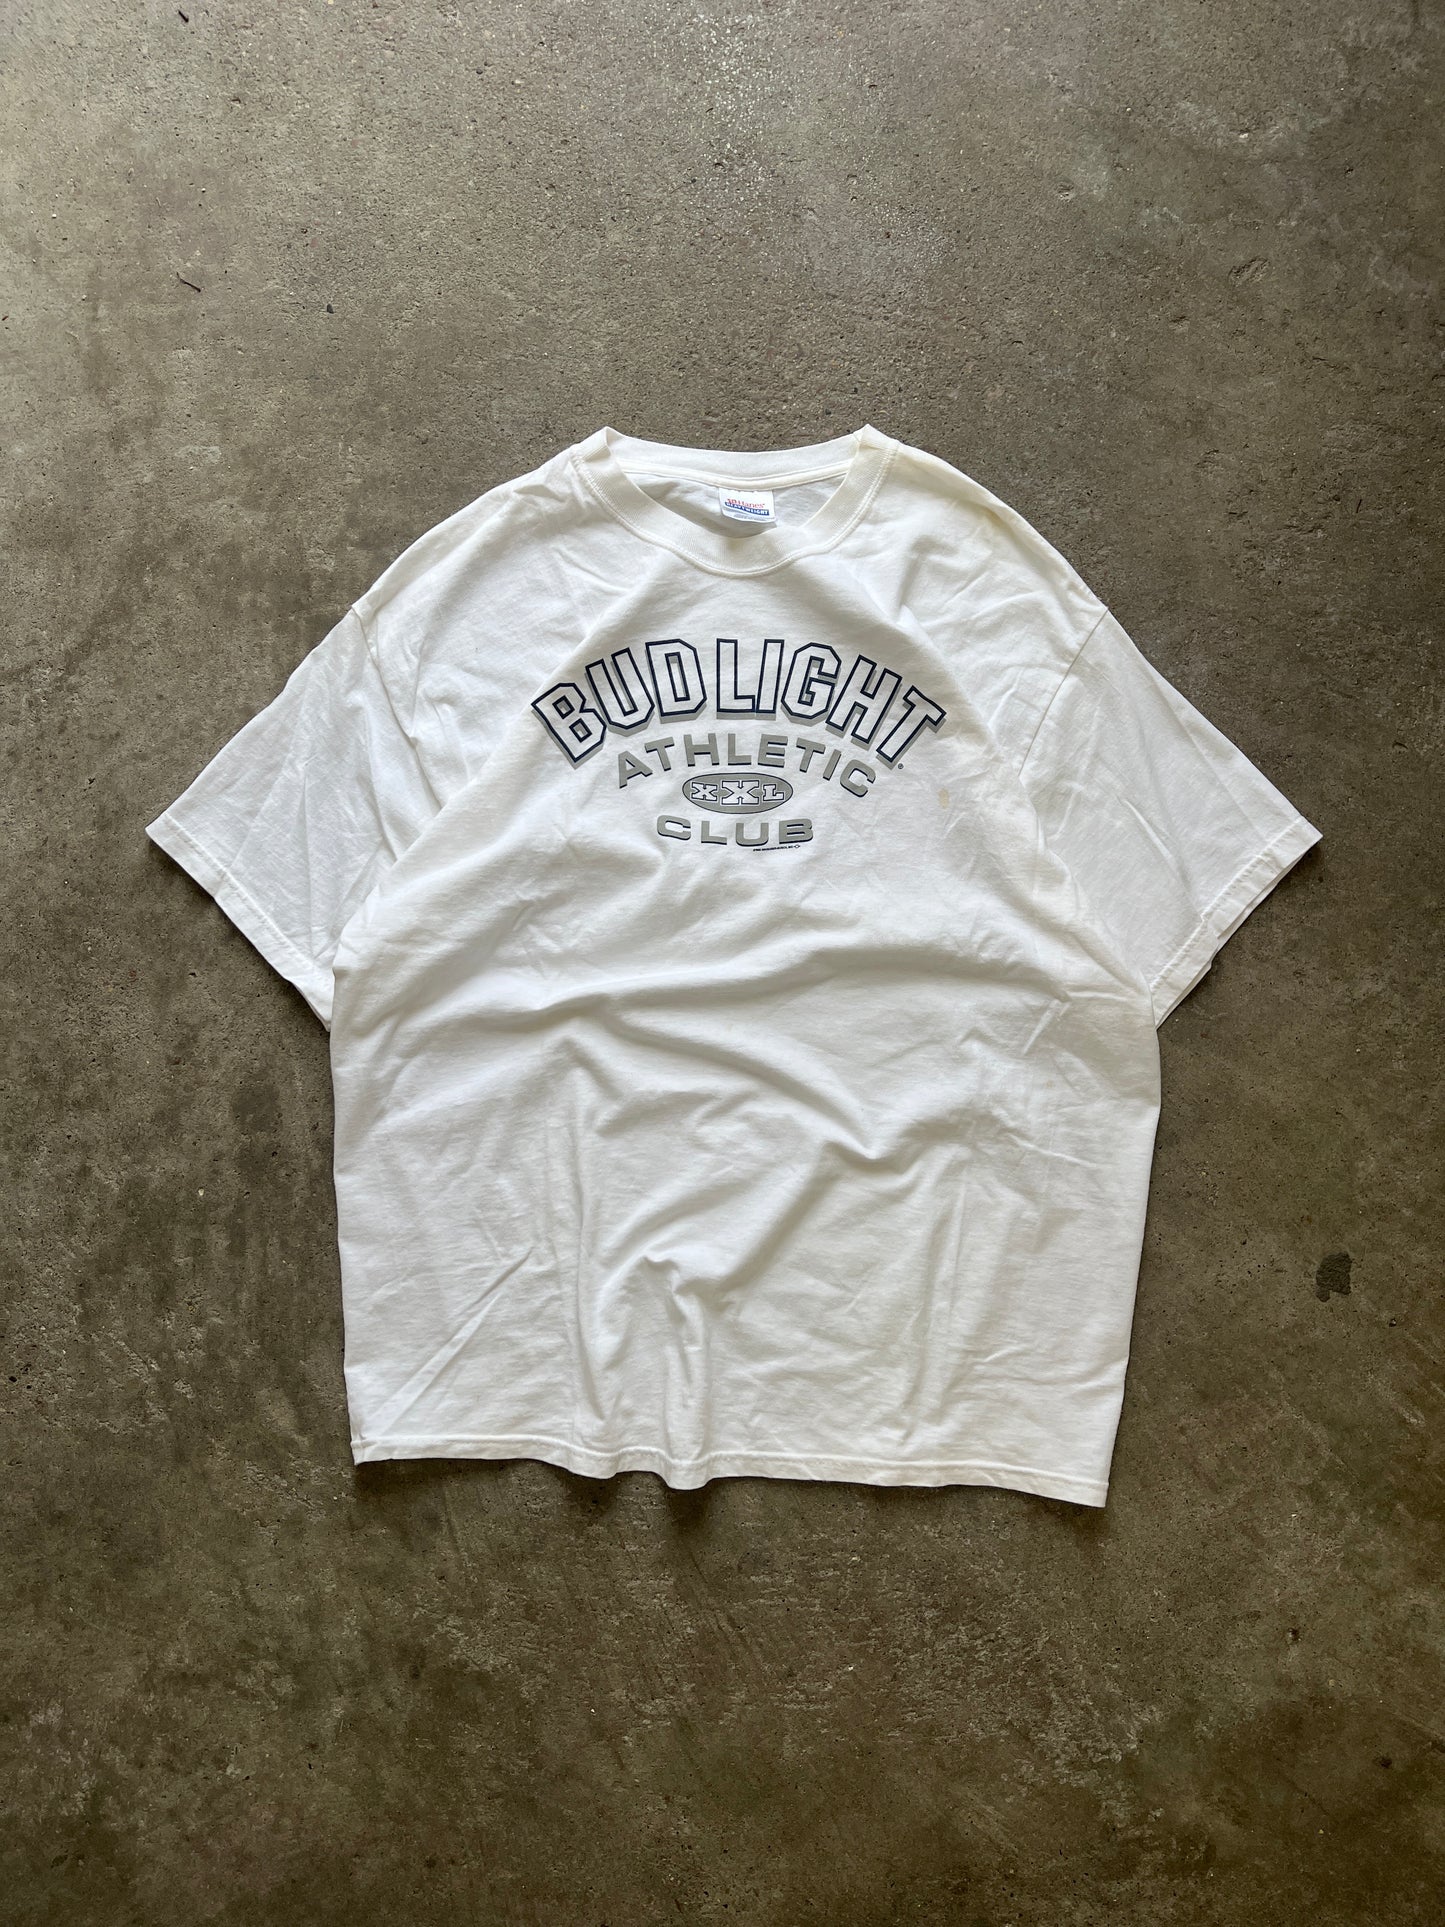 Vintage Bud Light Club Shirt - XL